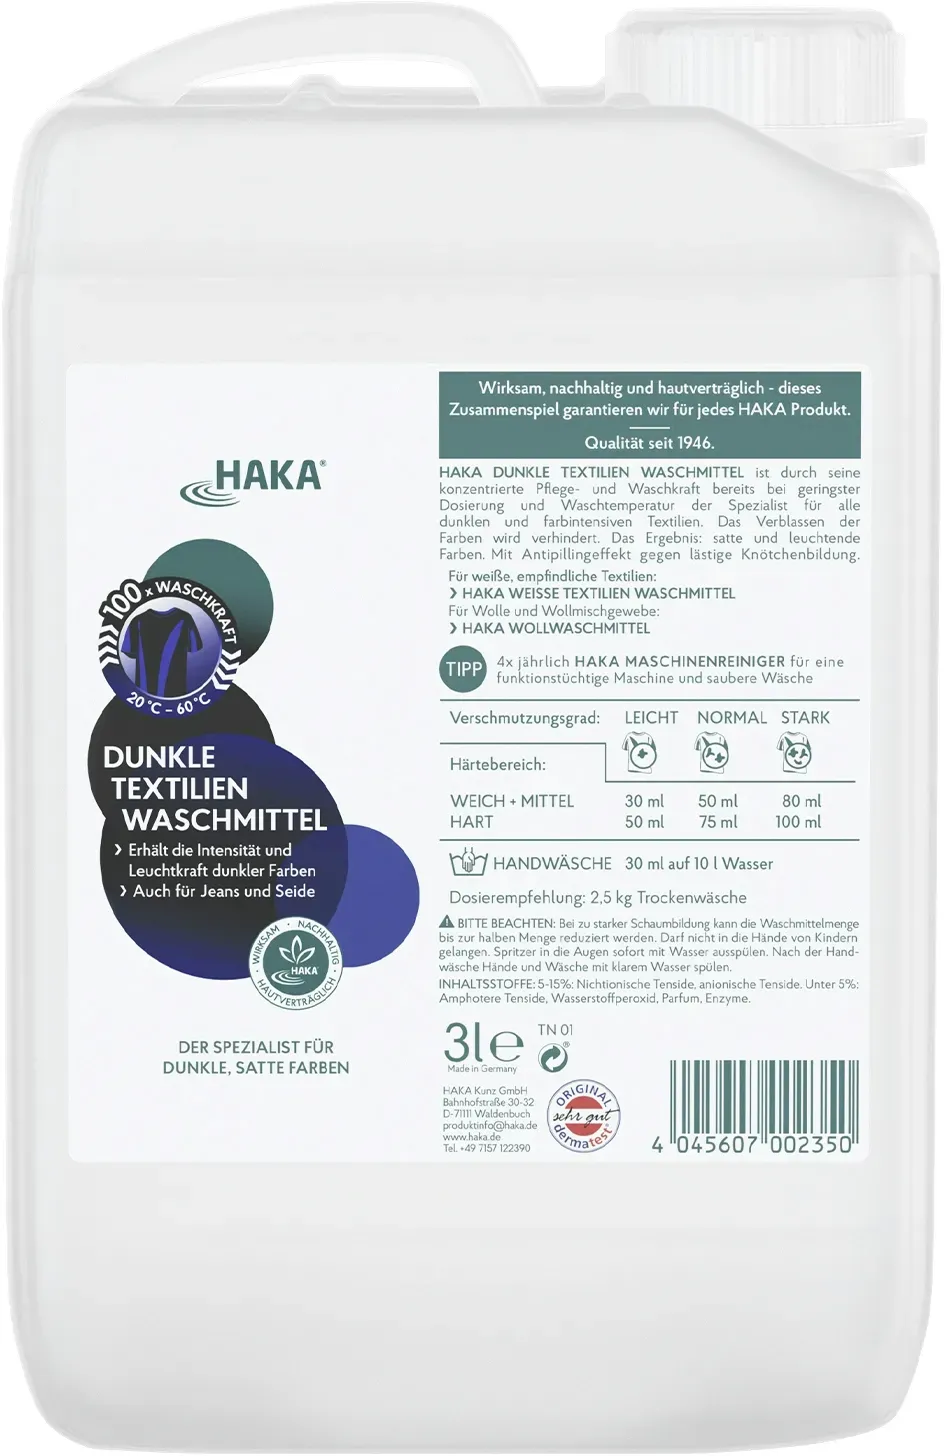 HAKA Dunkle Textilien Waschmittel 3l Flüssigwaschmittel für Jeans, dunkle Wäsche